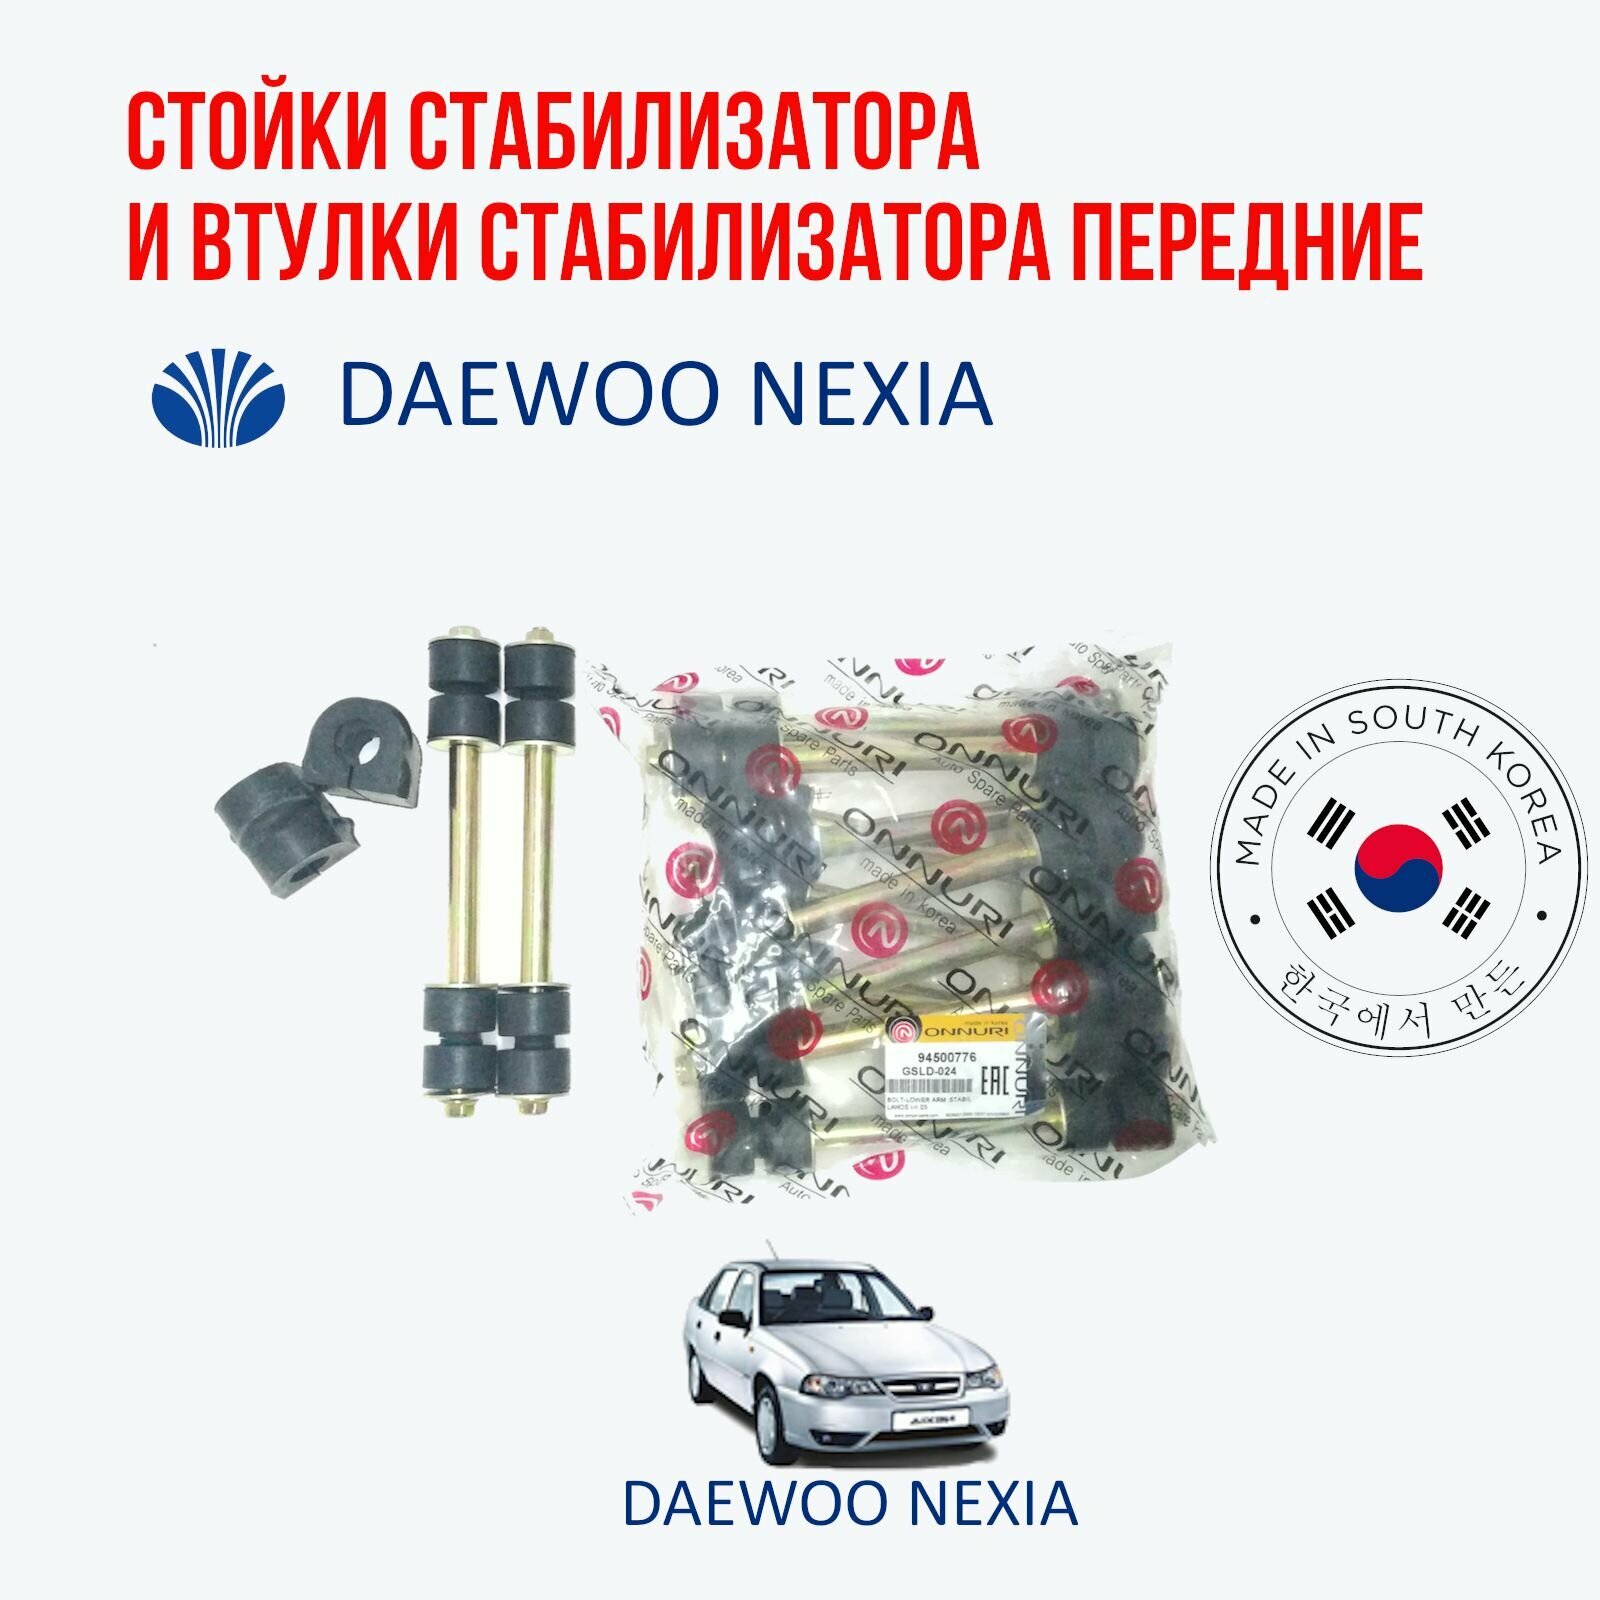 Стойка стабилизатора и втулка стабилизатора переднего комплект 2 шт. на Daewoo nexia (Дэу Нексия)